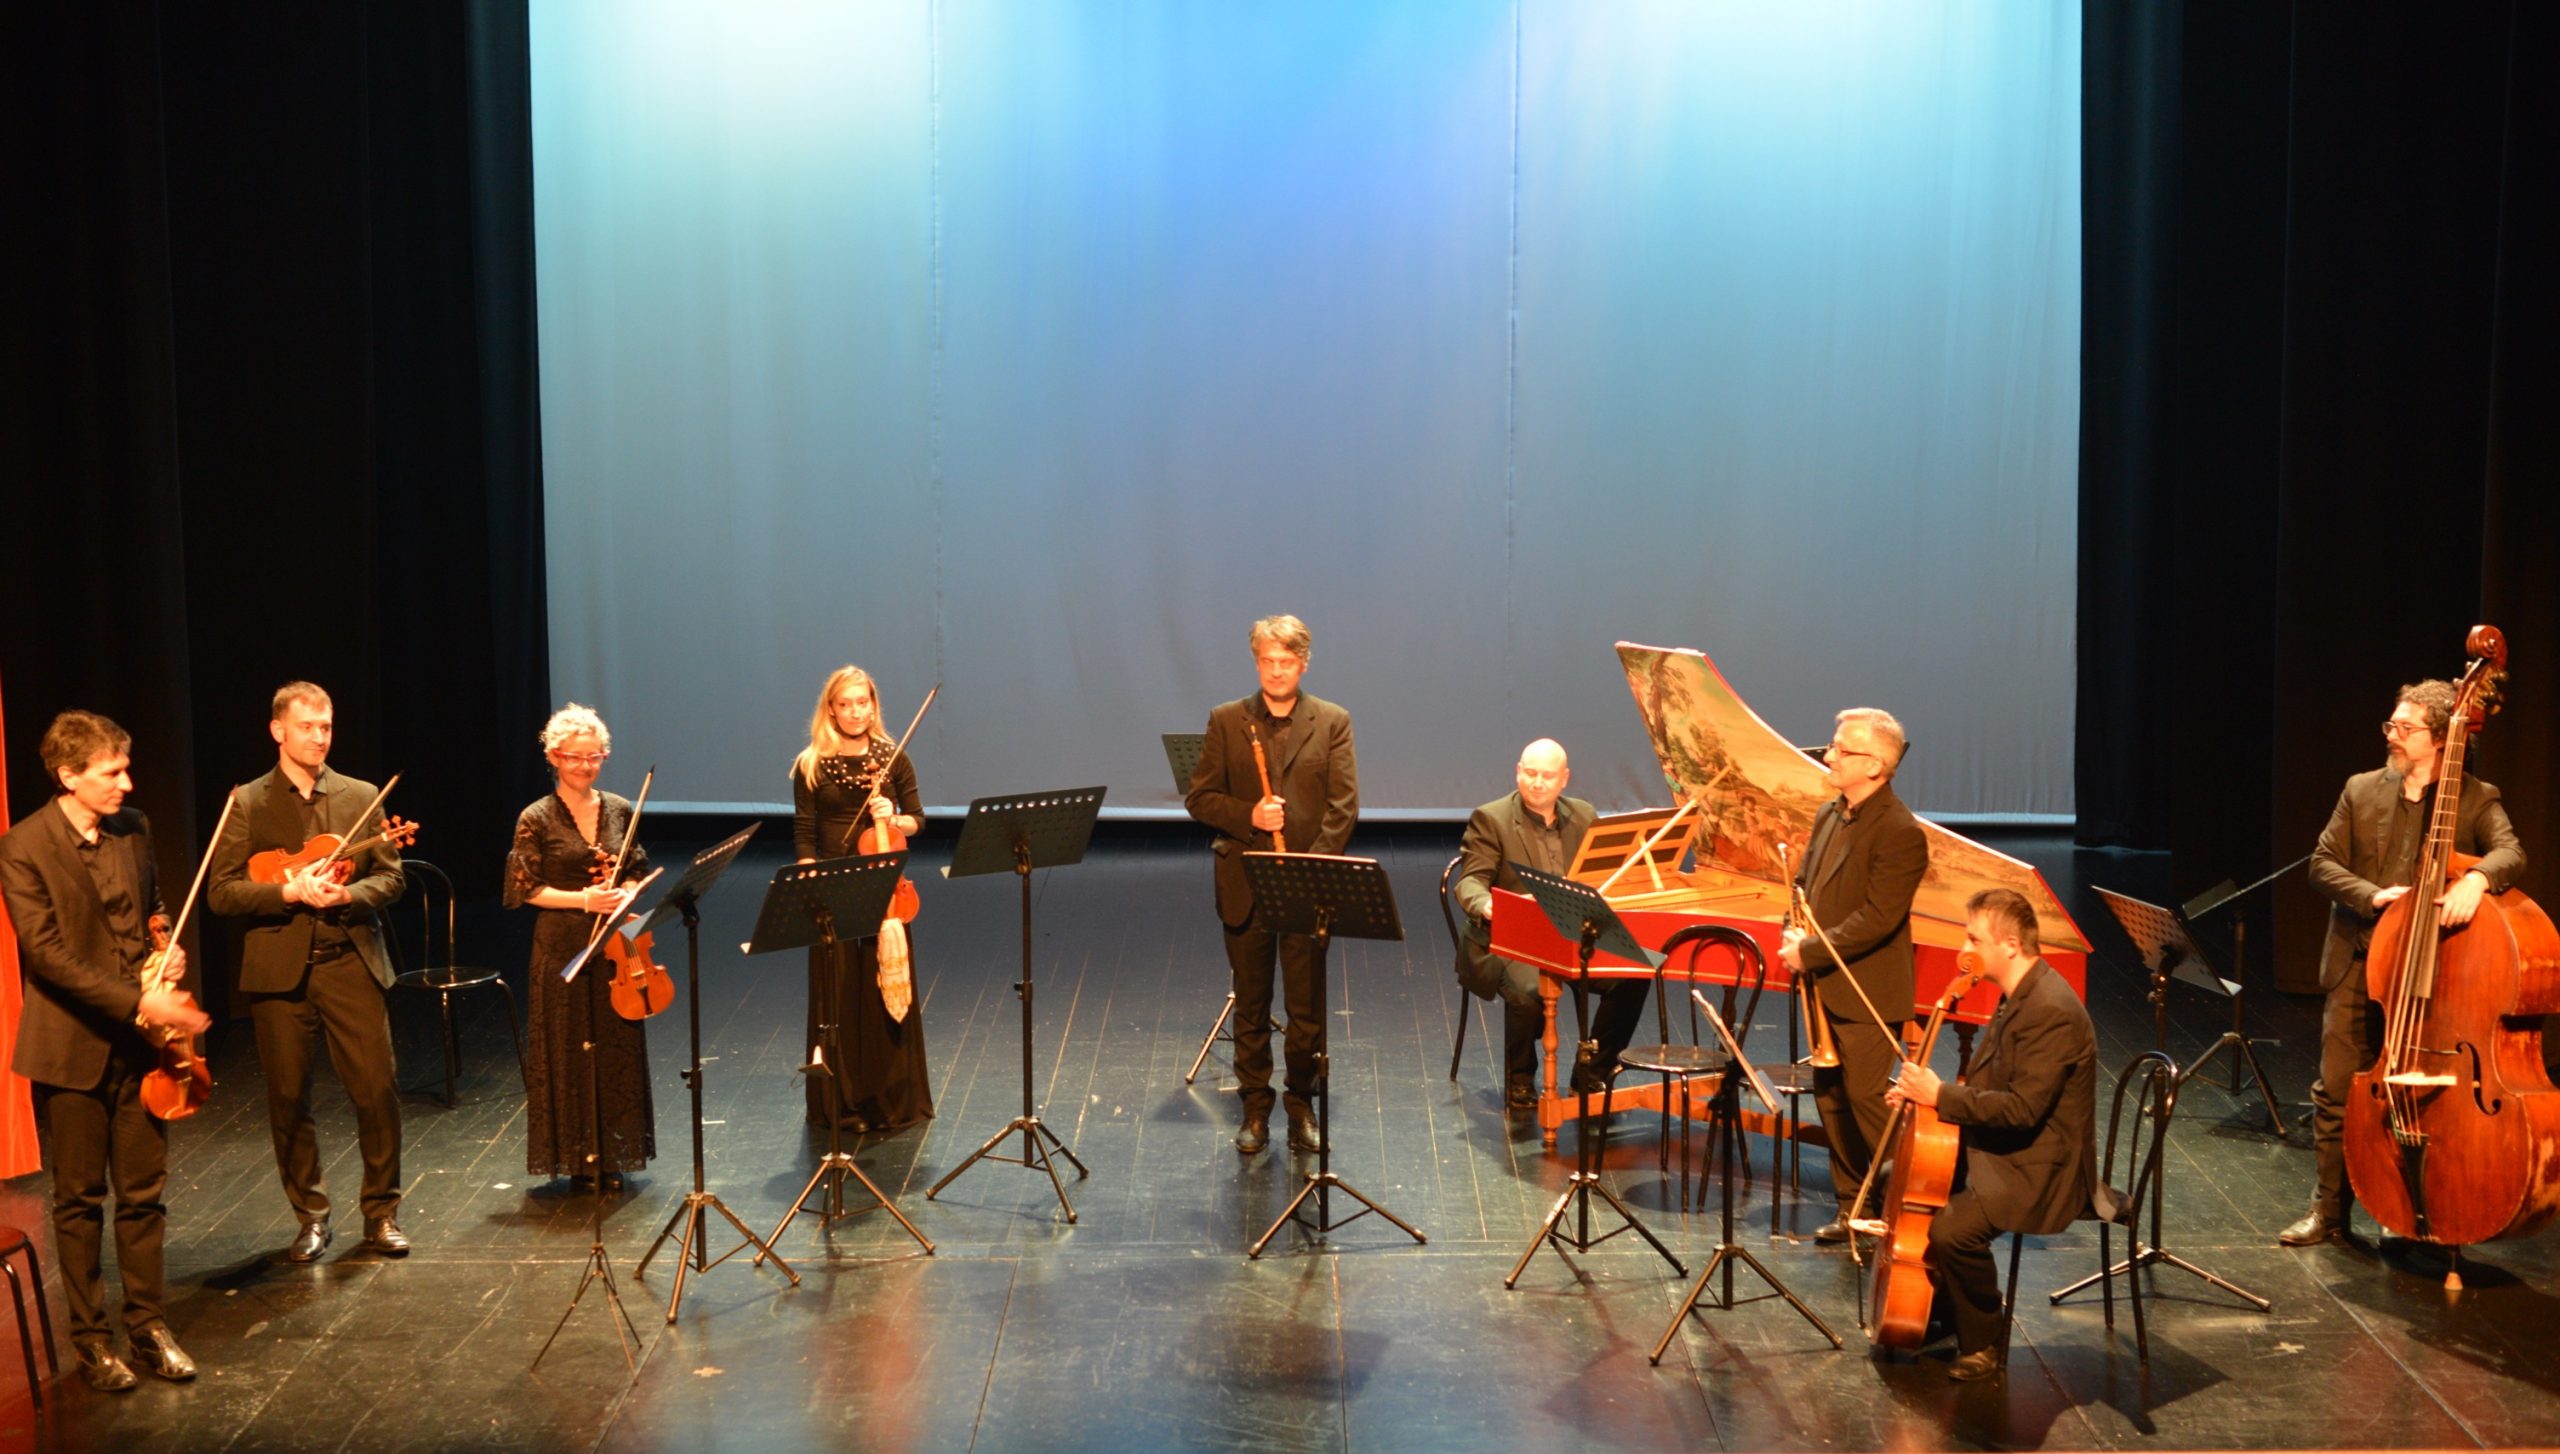 Orchestra “Tiepolo Barocca” del Friuli Venezia Giulia